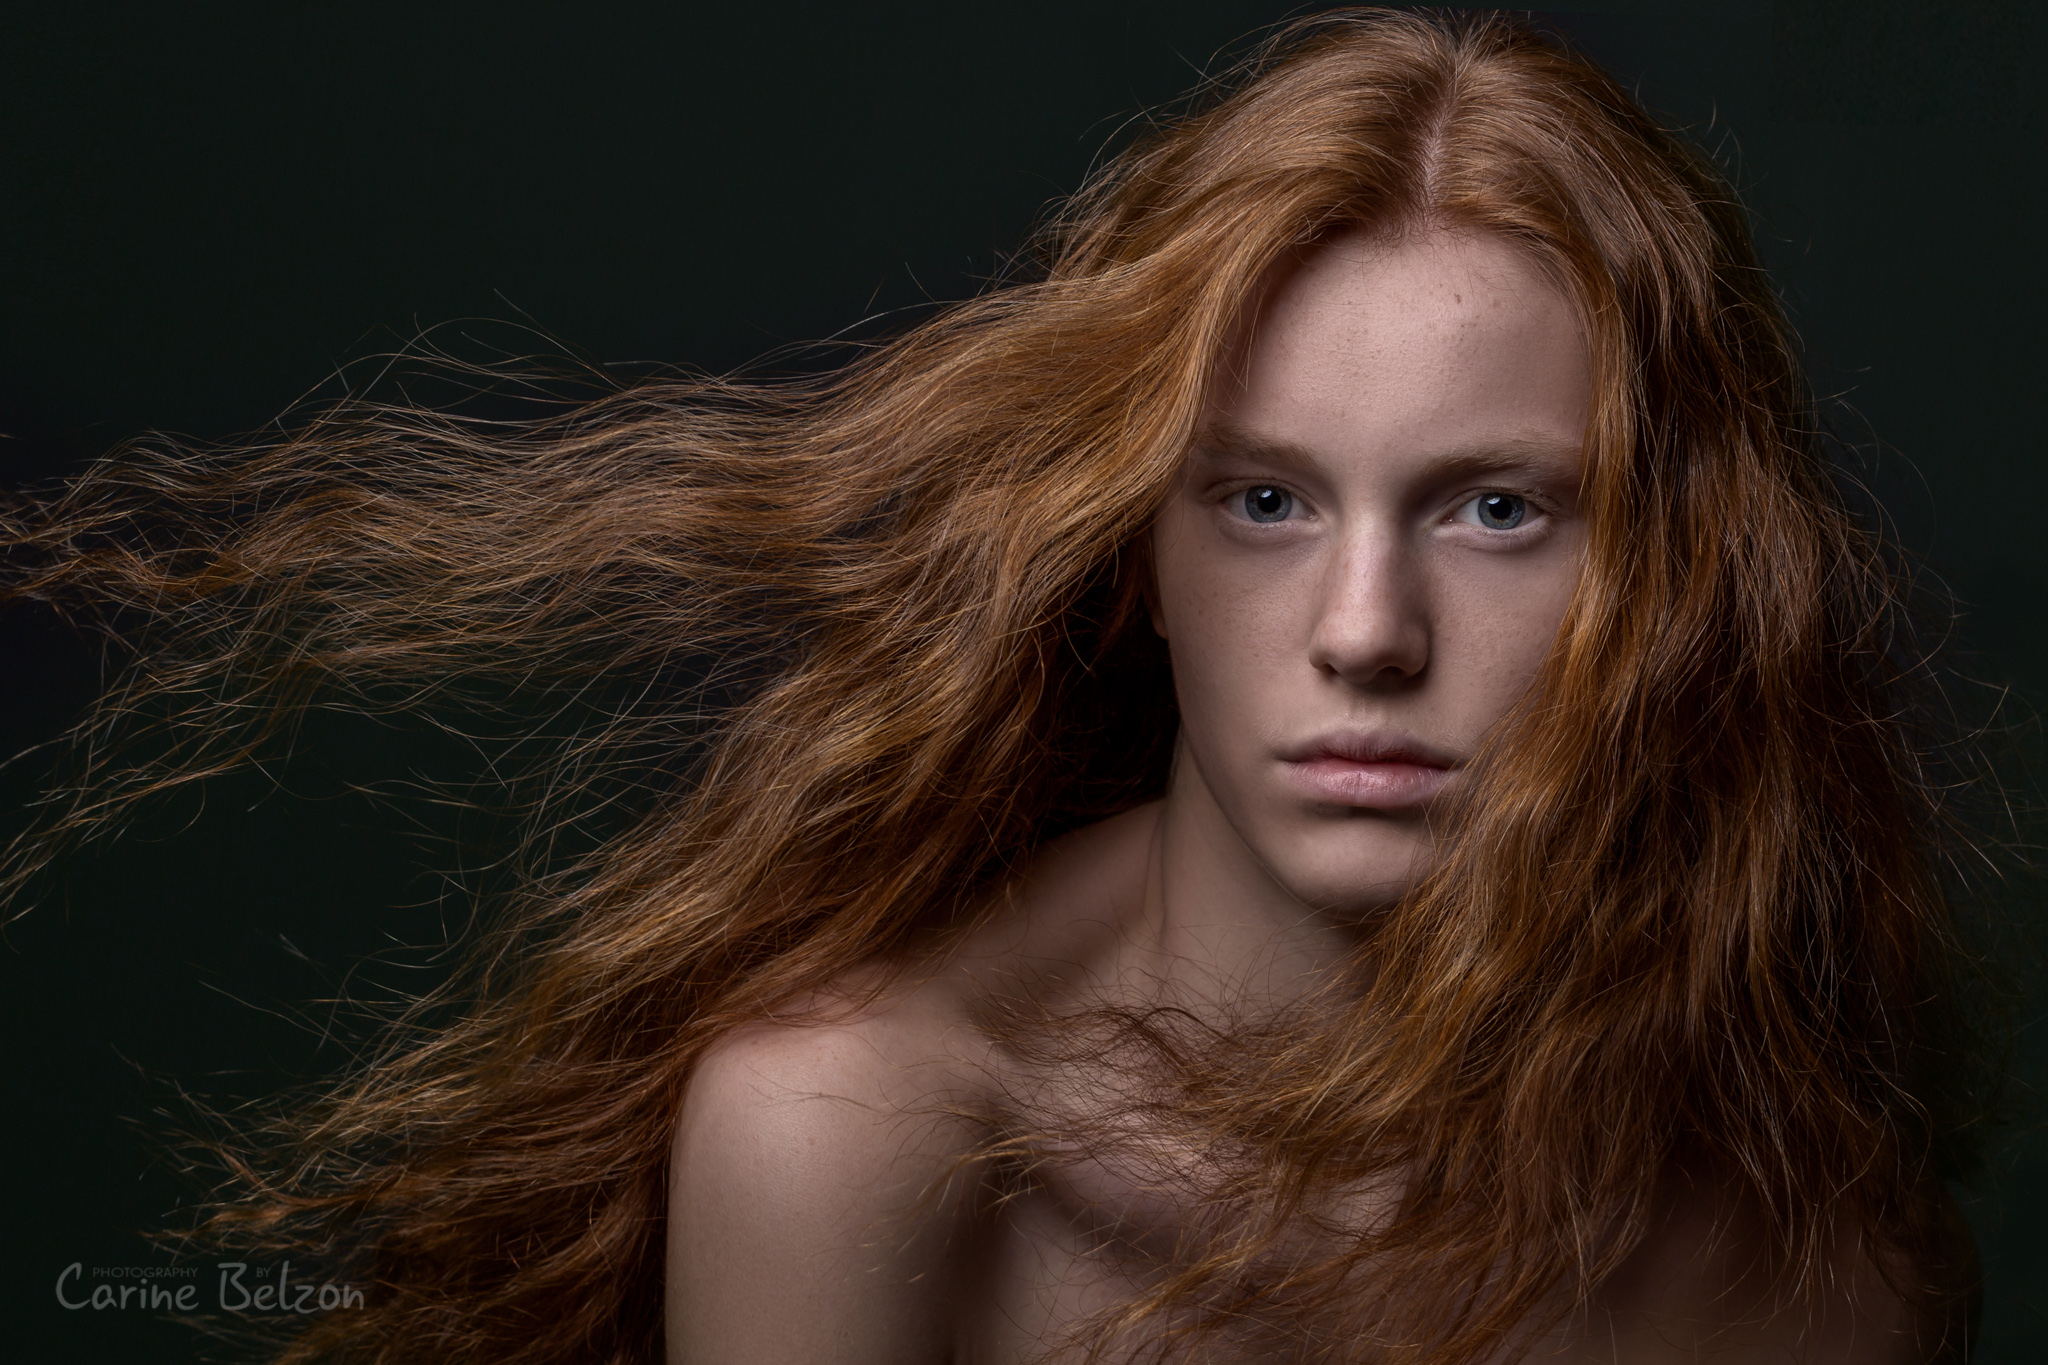 Modelportfolio shootdag - Carine Belzon | Fotograaf Drachten, Friesland, Utrecht